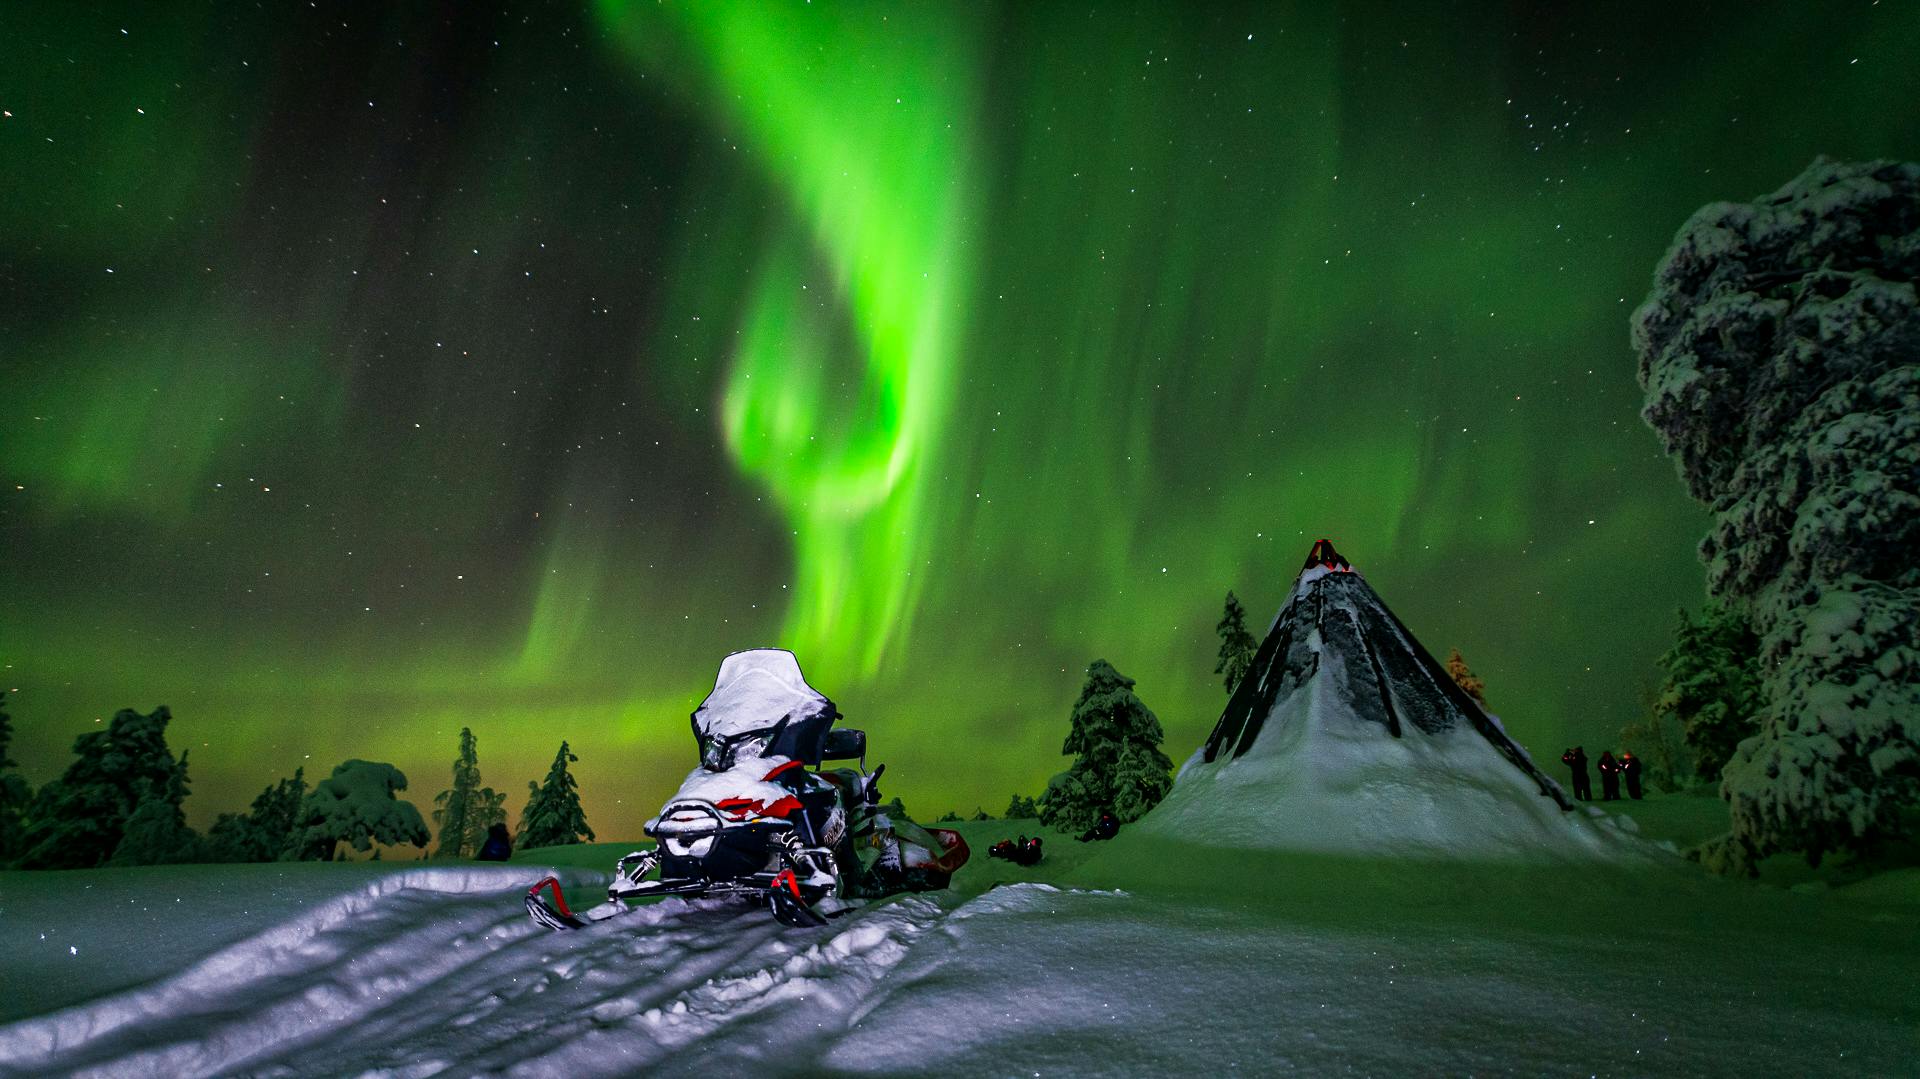 Northern lights hunt by snowmobile in Saariselka